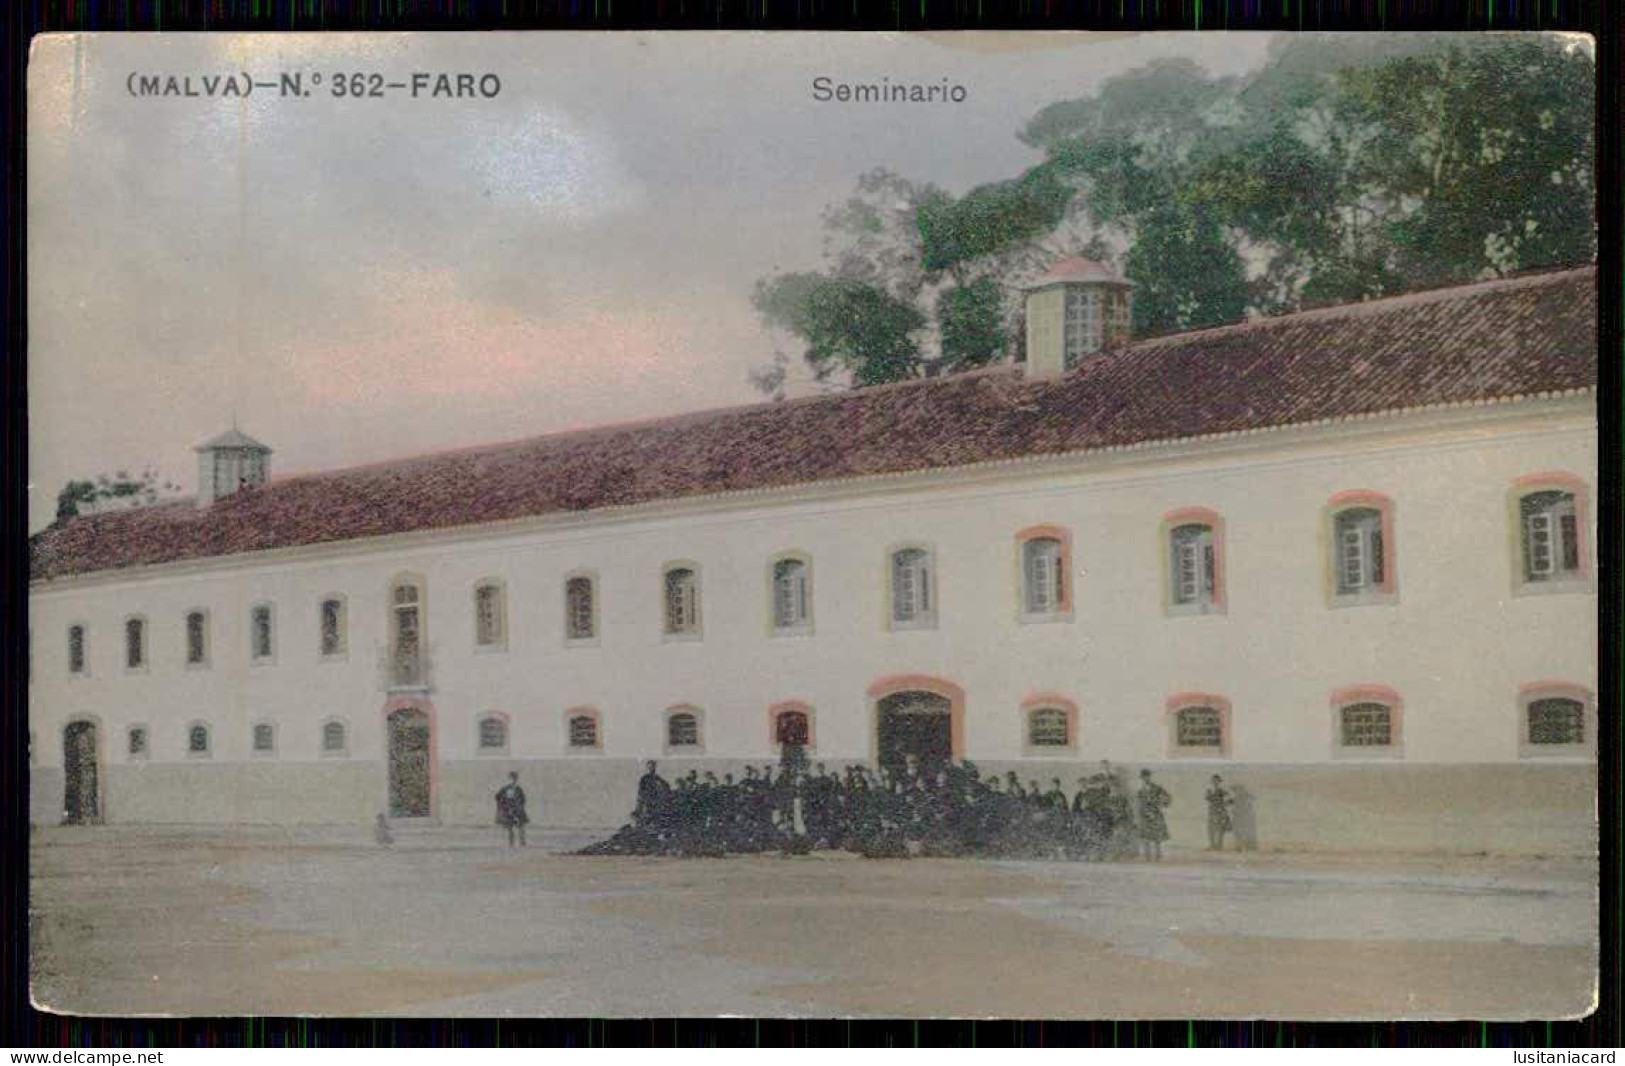 ALGARVE - FARO - Seminario. ( Edição Malva Nº 362)  Carte Postale - Faro